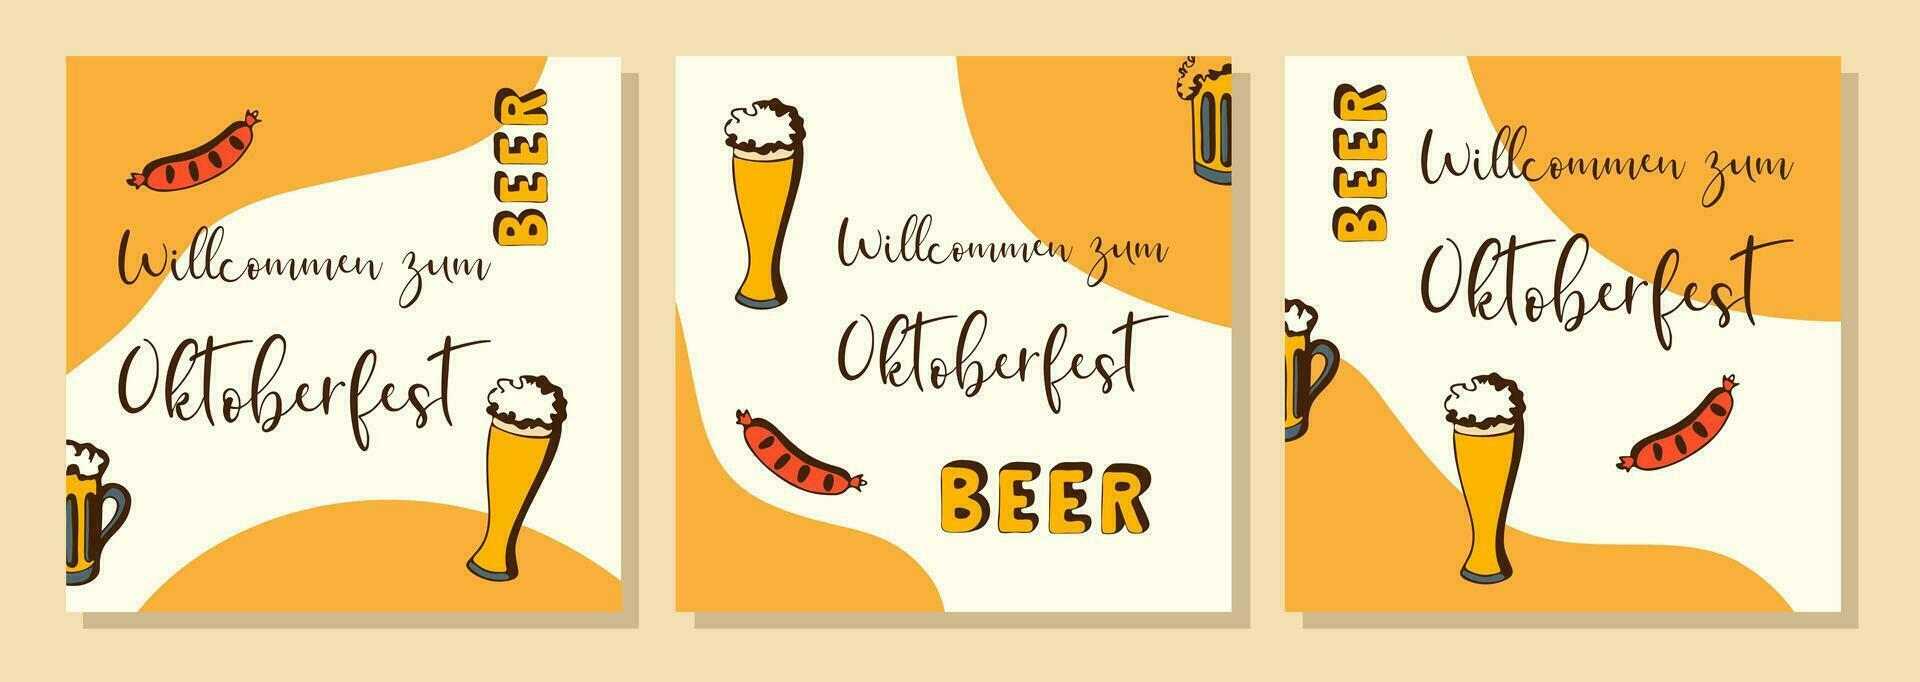 oktoberfest. Cerveja festival. laranja cartazes conjunto com rabisco mão desenhado e inscrição comandante zum oktoberfest. vetor